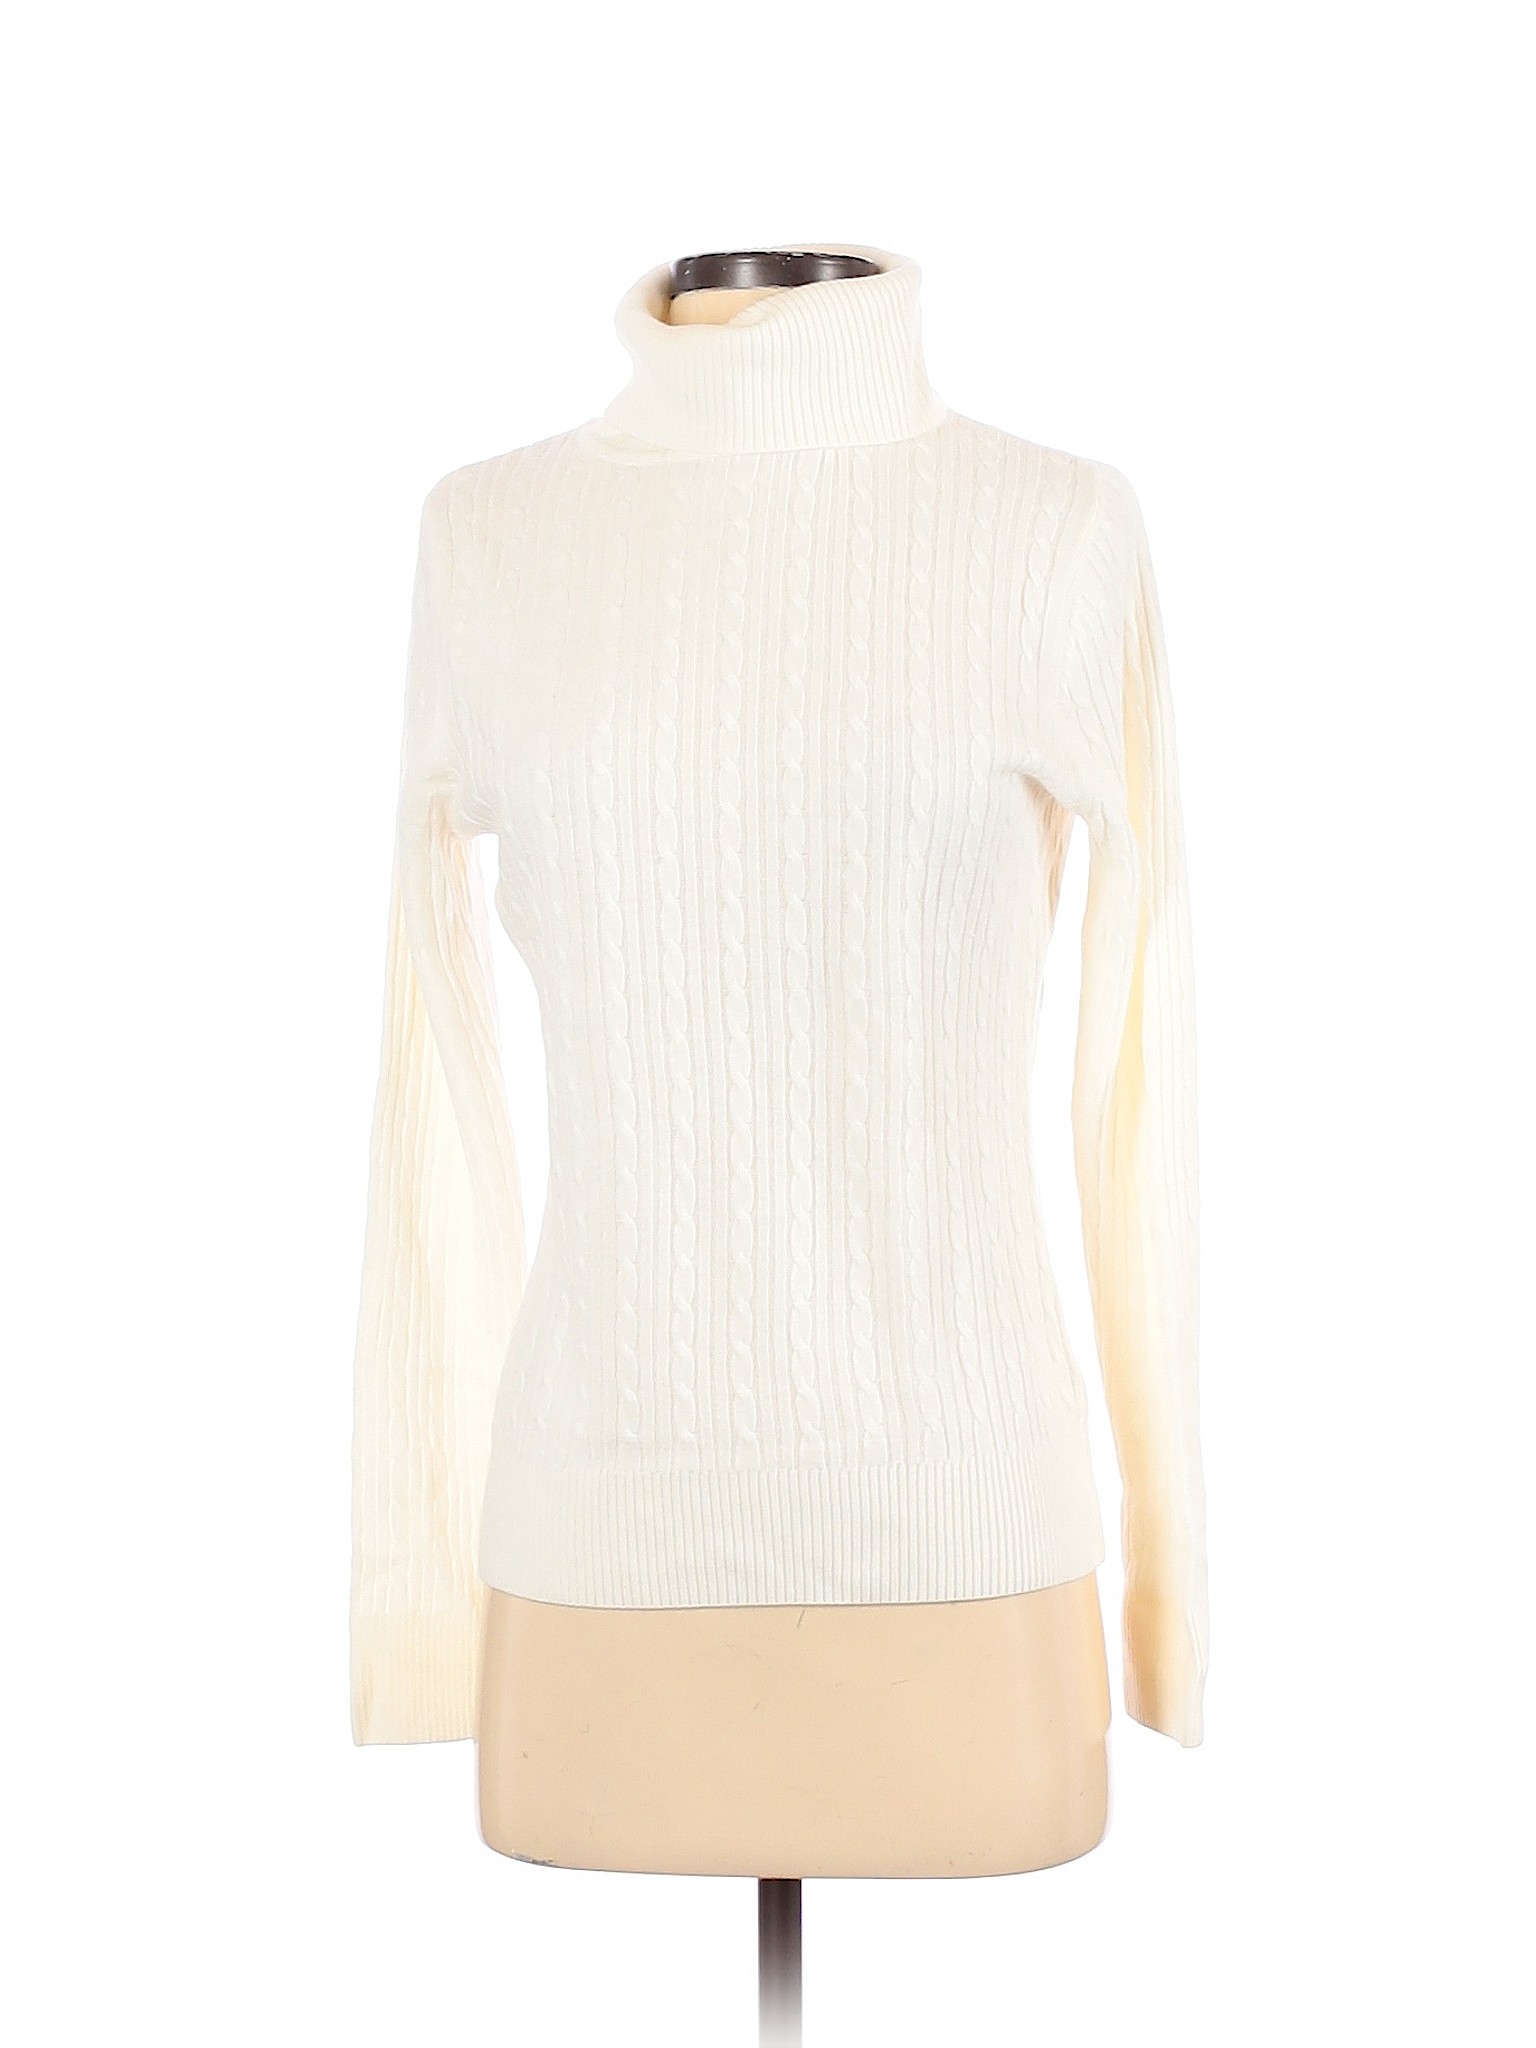 Croft & Barrow Women White Turtleneck Sweater S | eBay